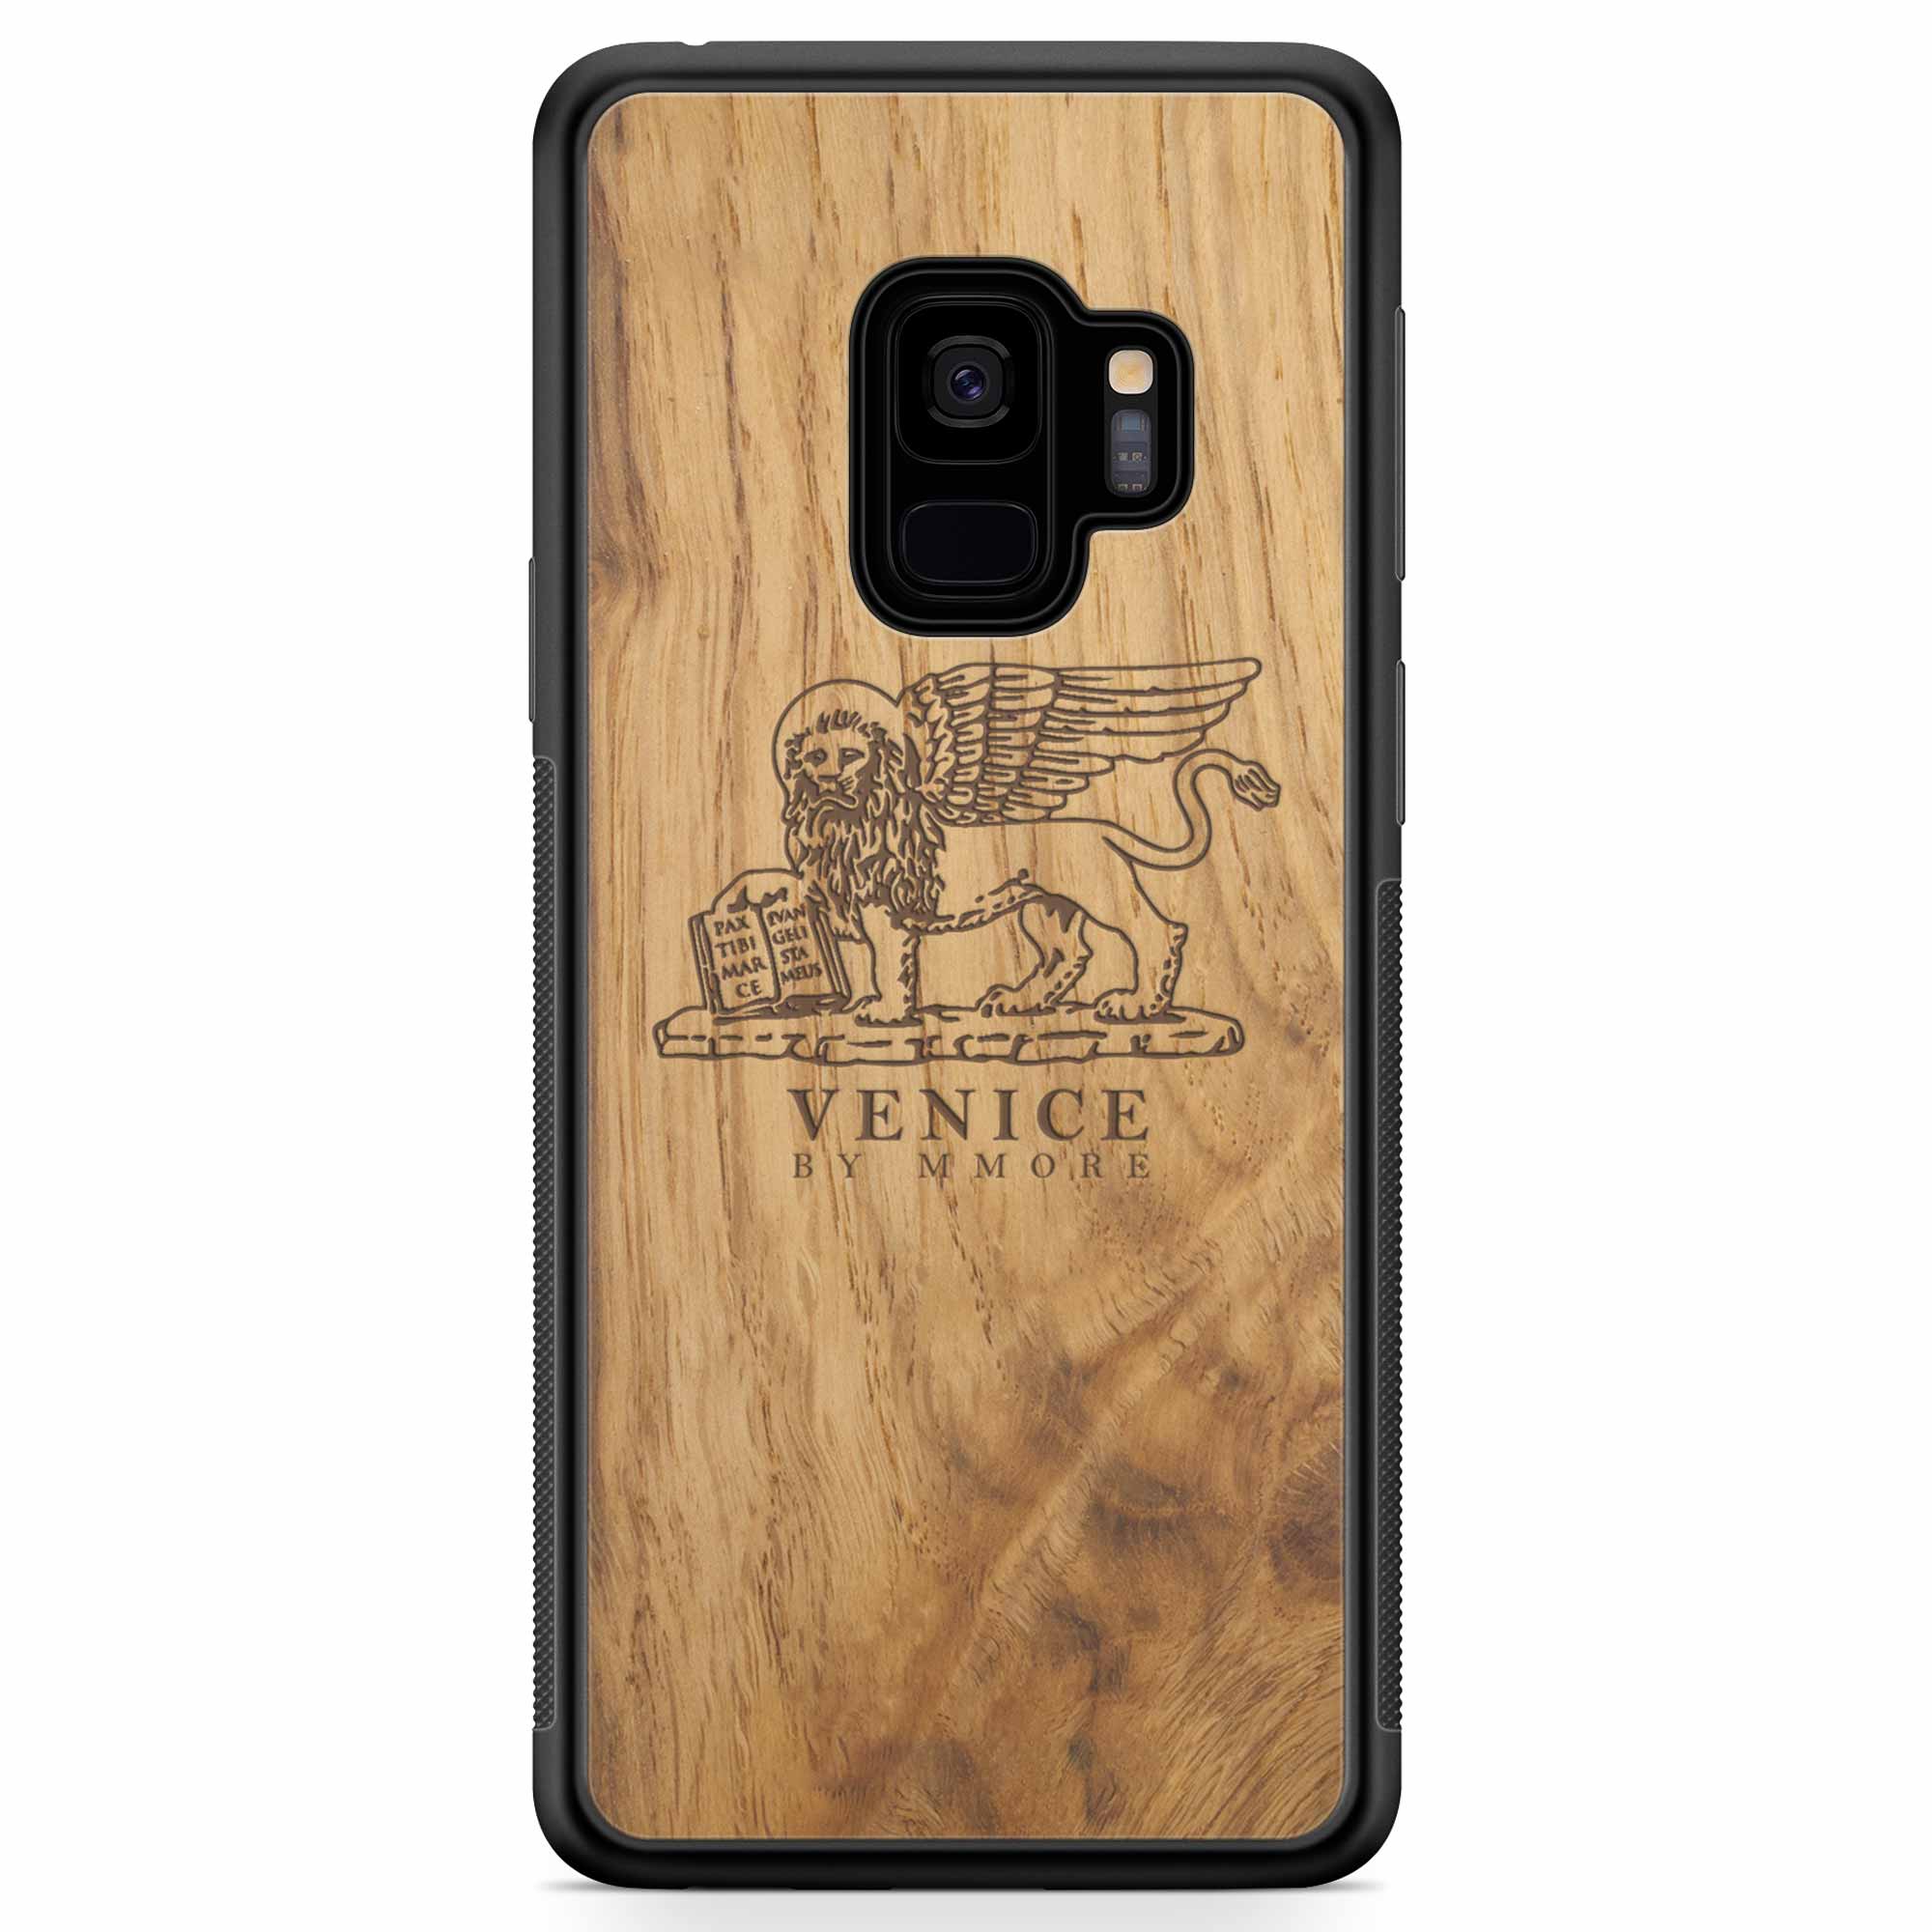 Venice Lion Samsung S9 Carcasa de madera antigua para teléfono